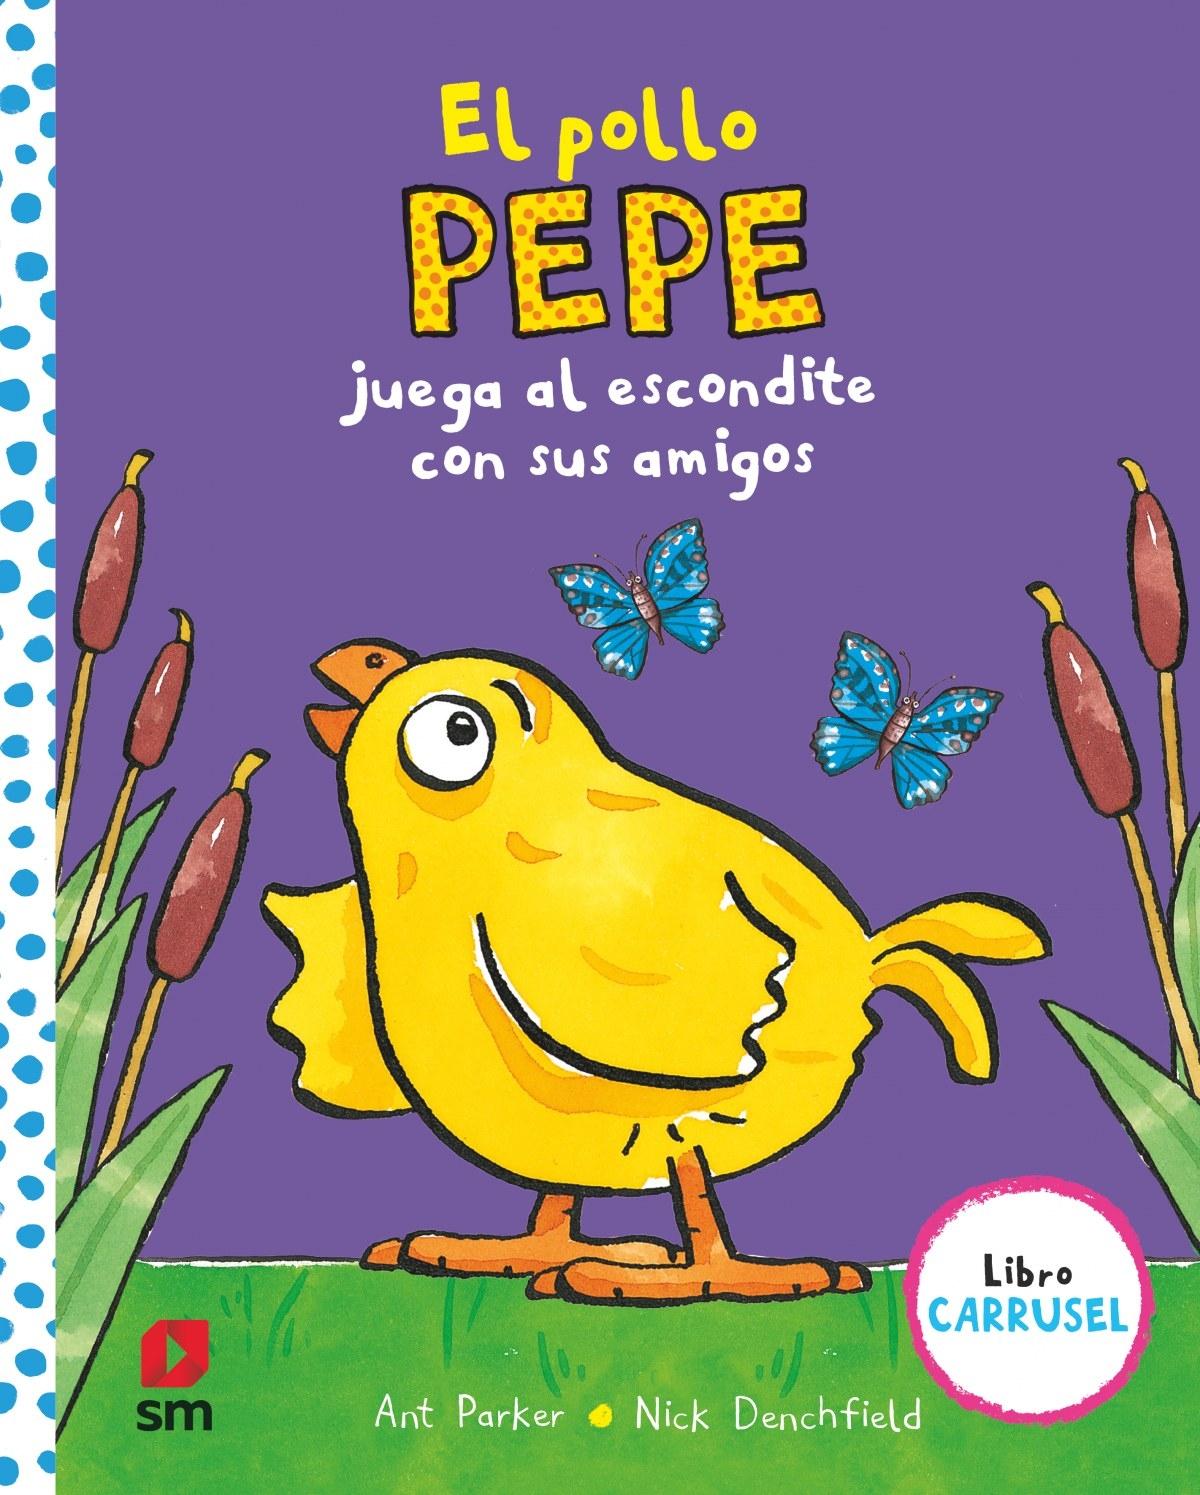 Pollo Pepe juega al escondite con sus amigos, El "Libro carrusel"